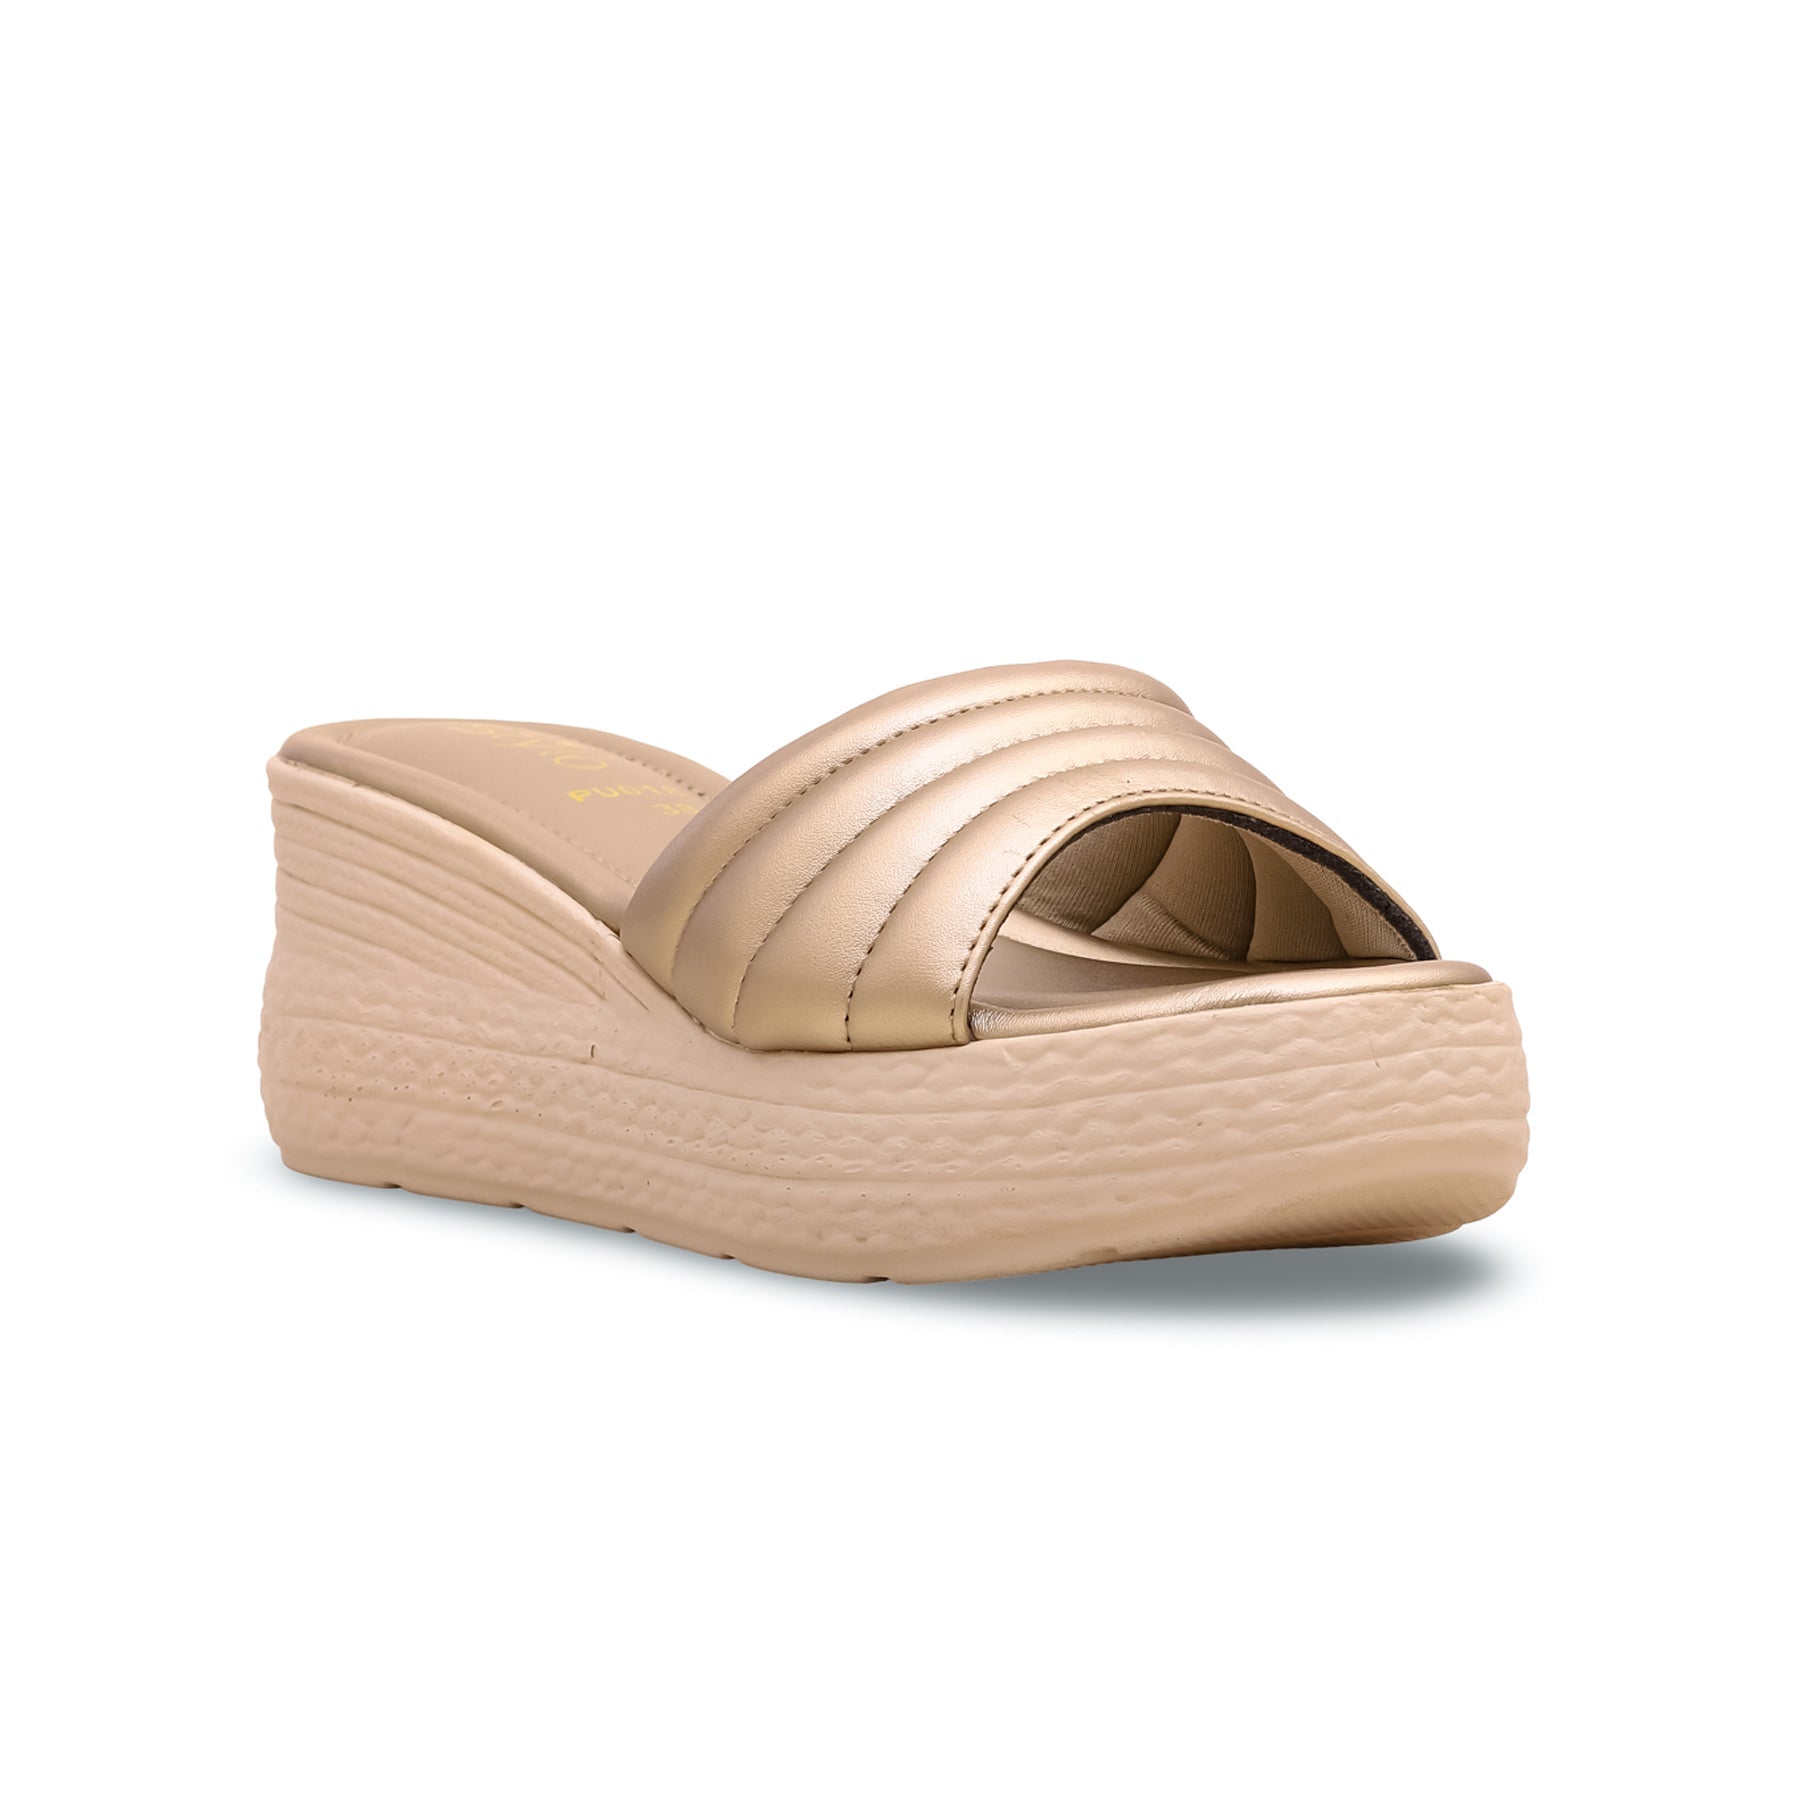 Golden Formal Sandal PU0181